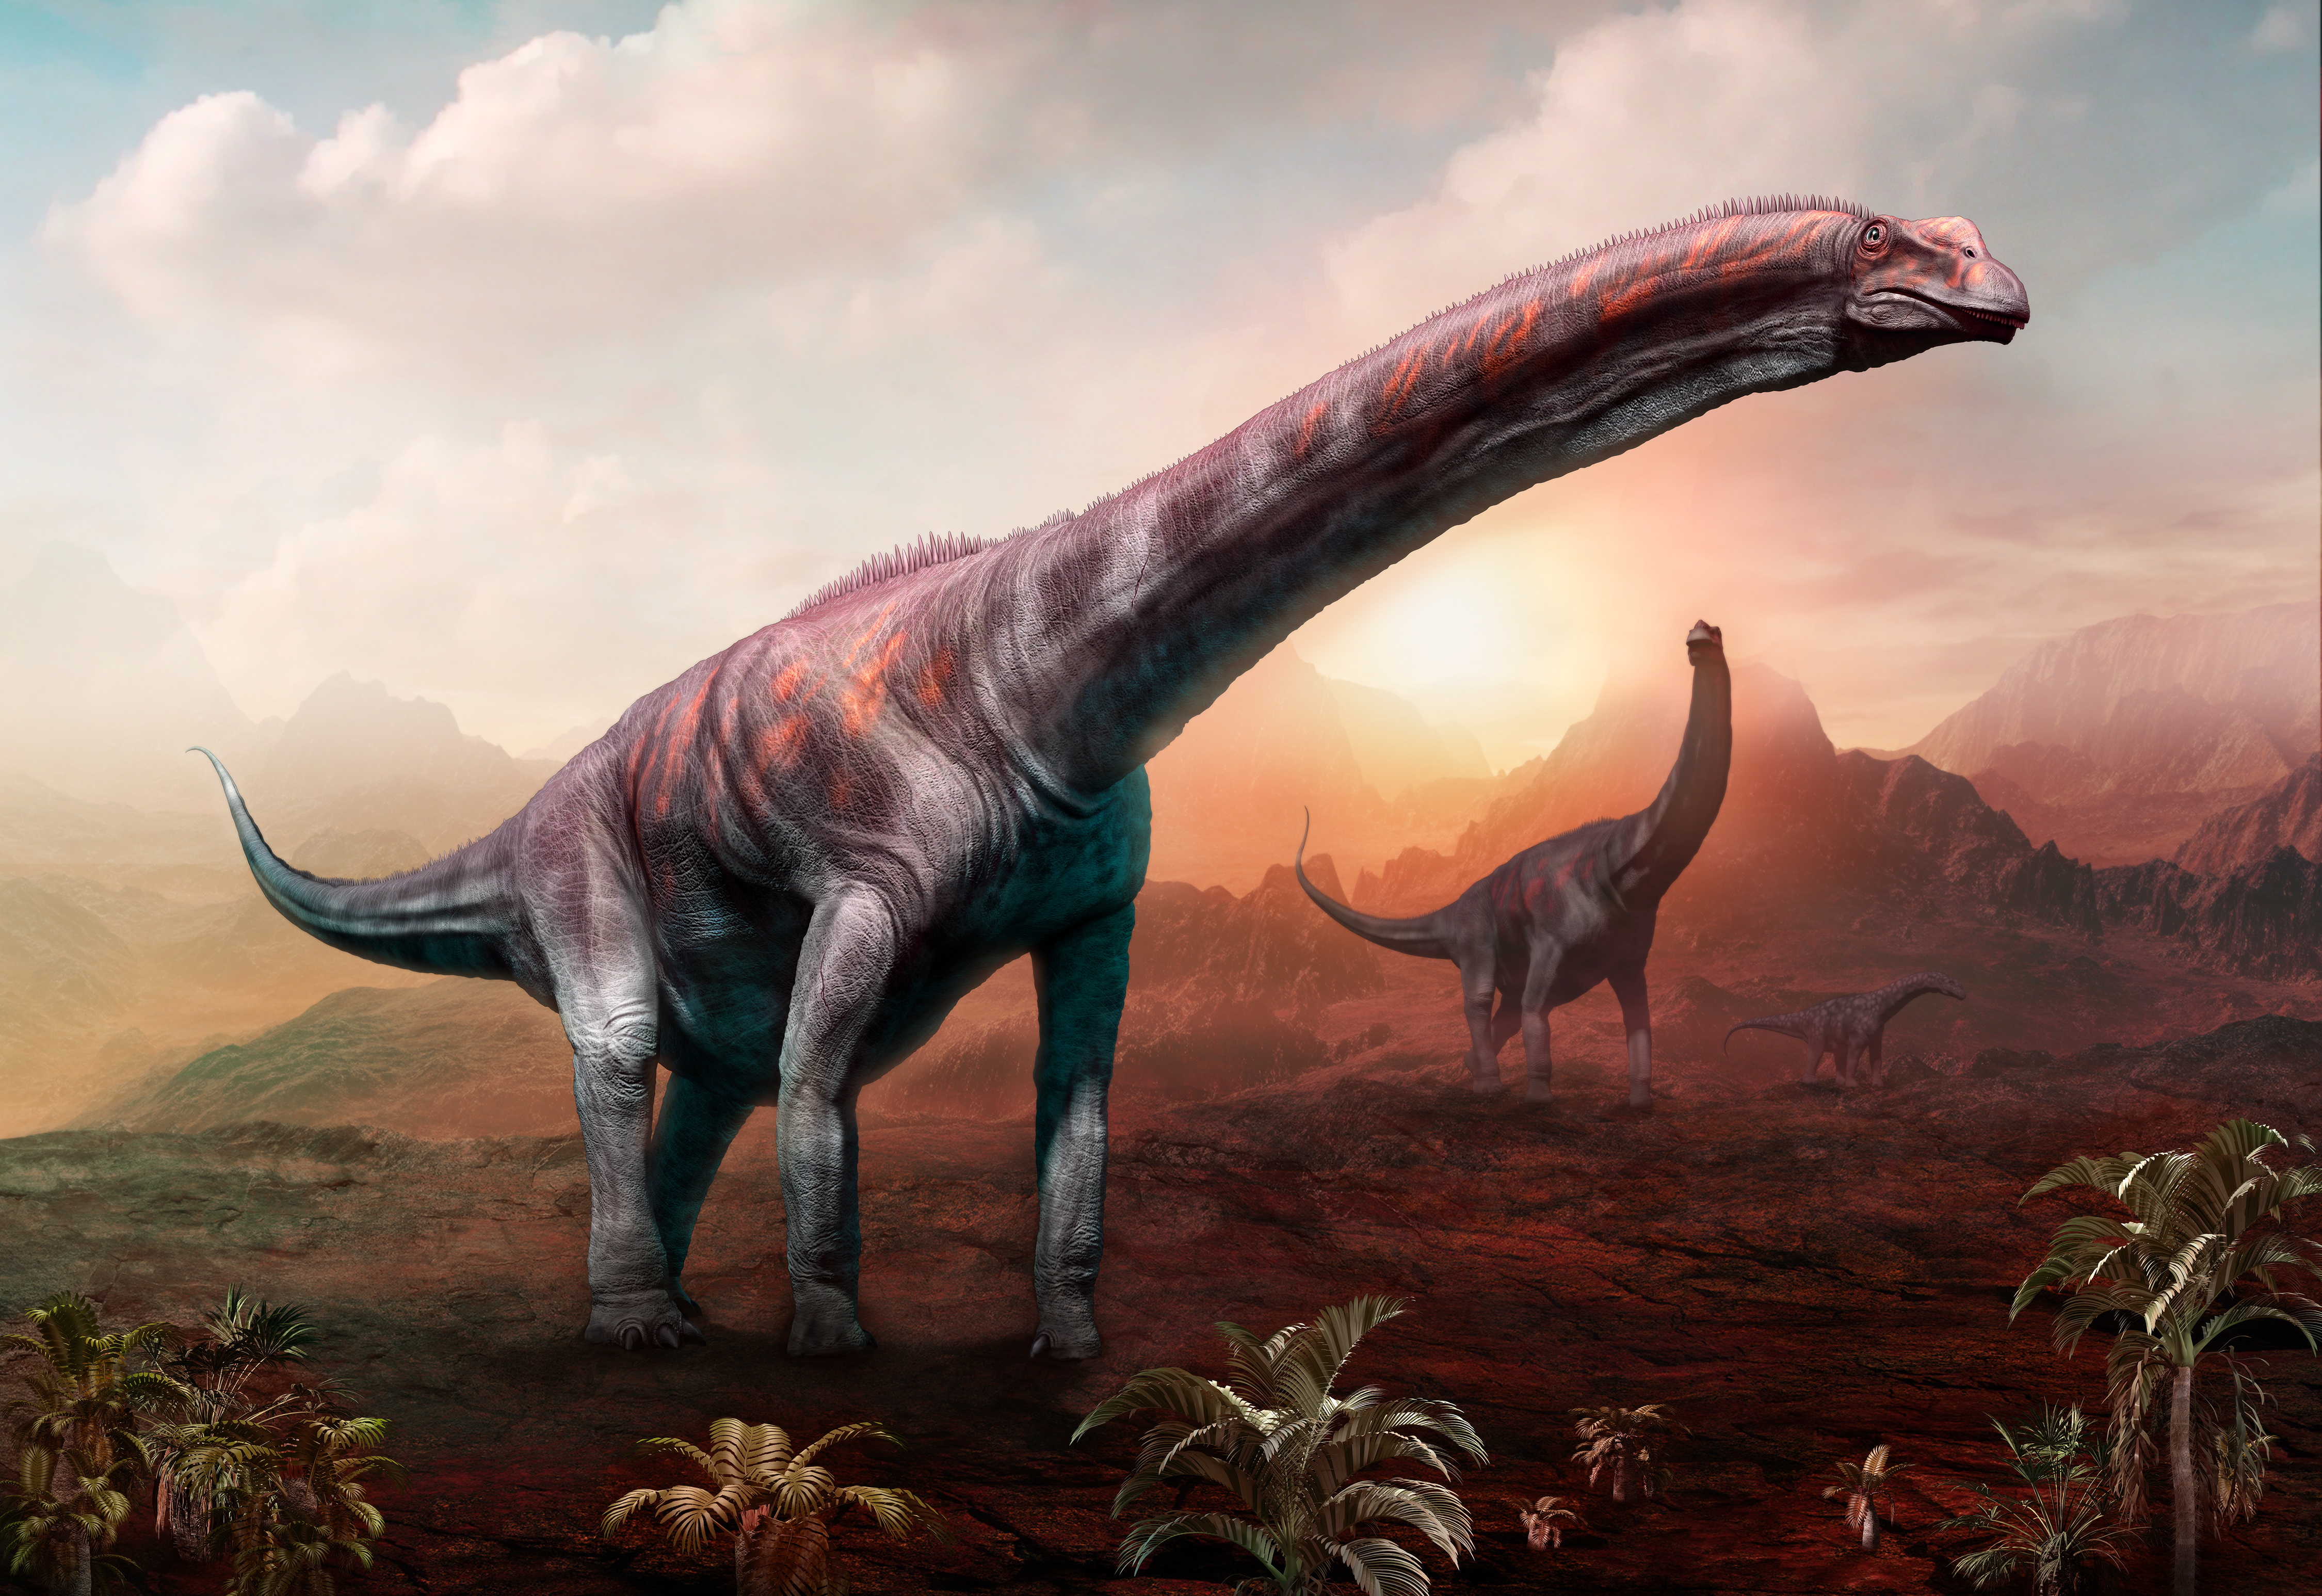 Künstlerische Darstellung von zwei Argentinosauriern, den bis heute grössten bekannten Sauriern